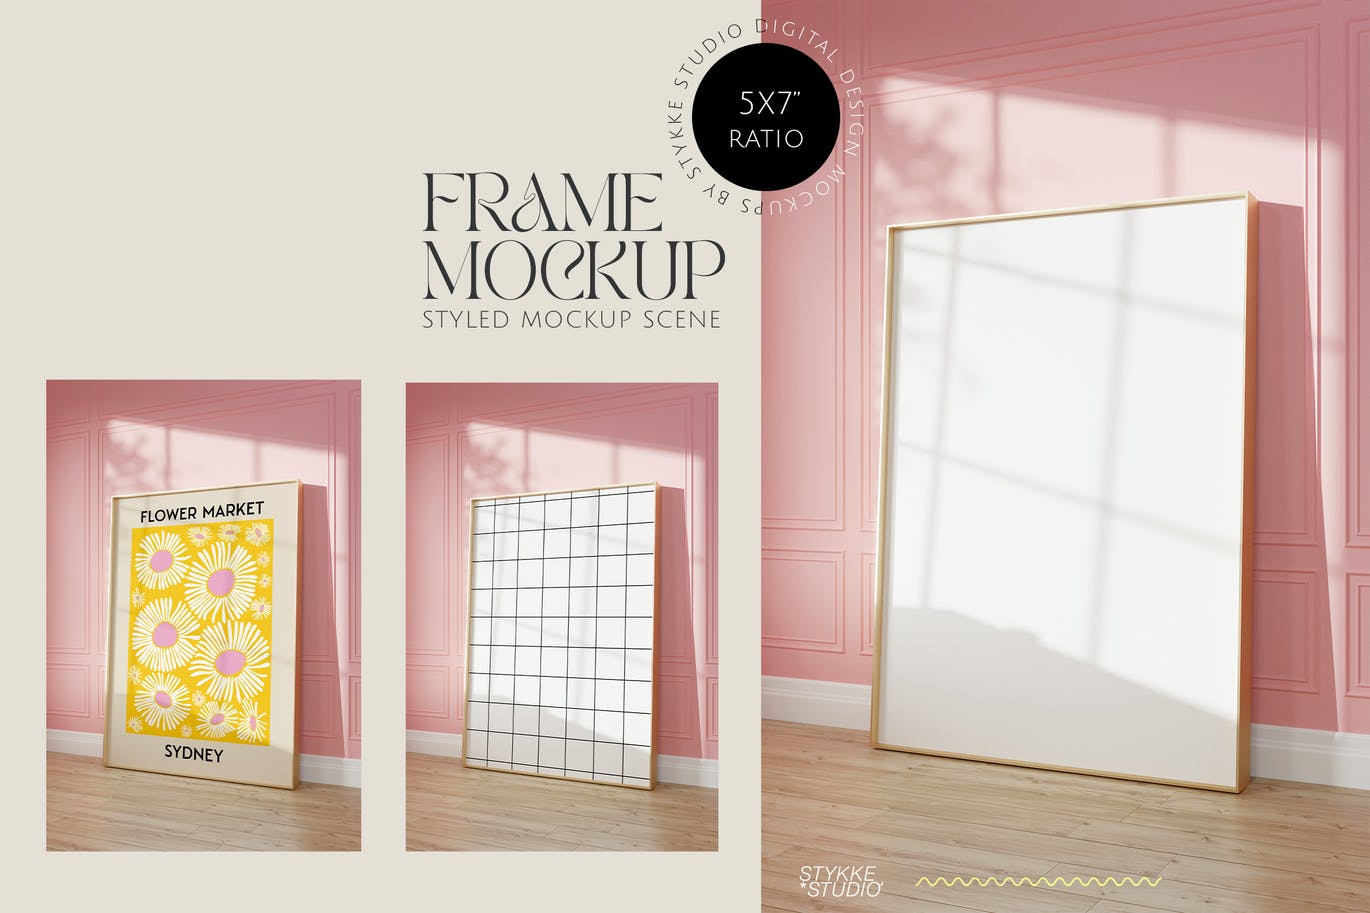 时尚极简主义粉色房间金色艺术画框画布展示样机模板 golde